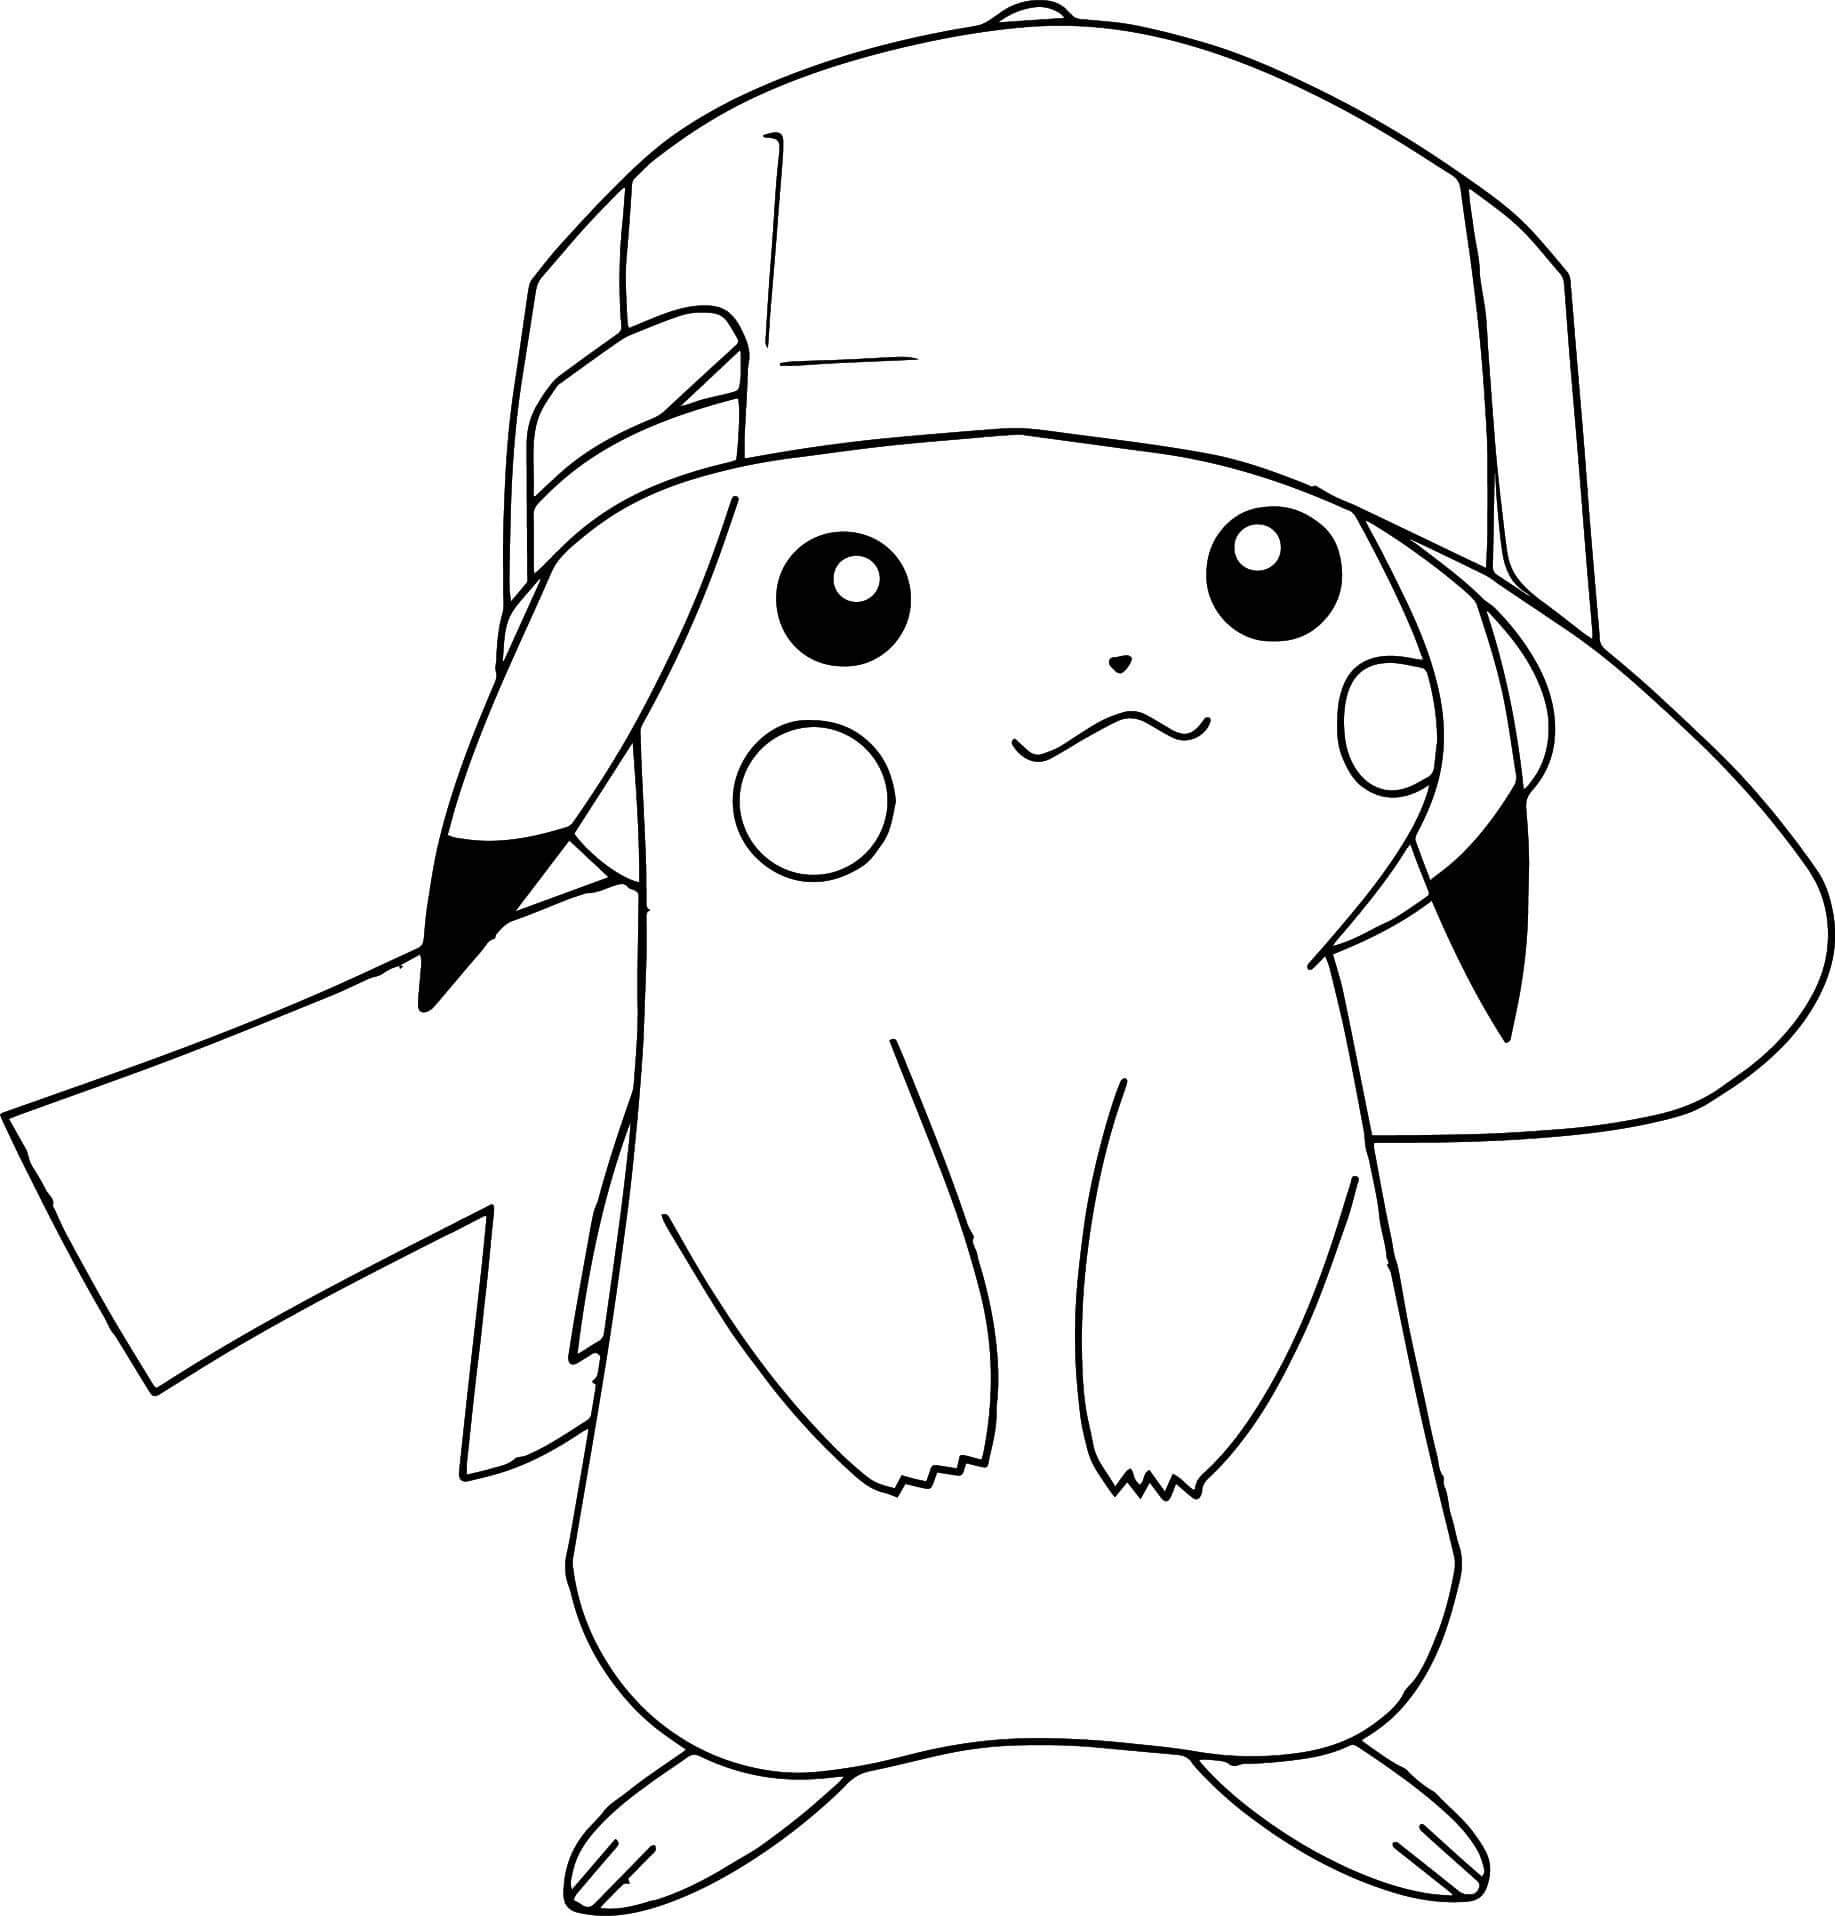 Pikachu Porte une Casquette coloring page